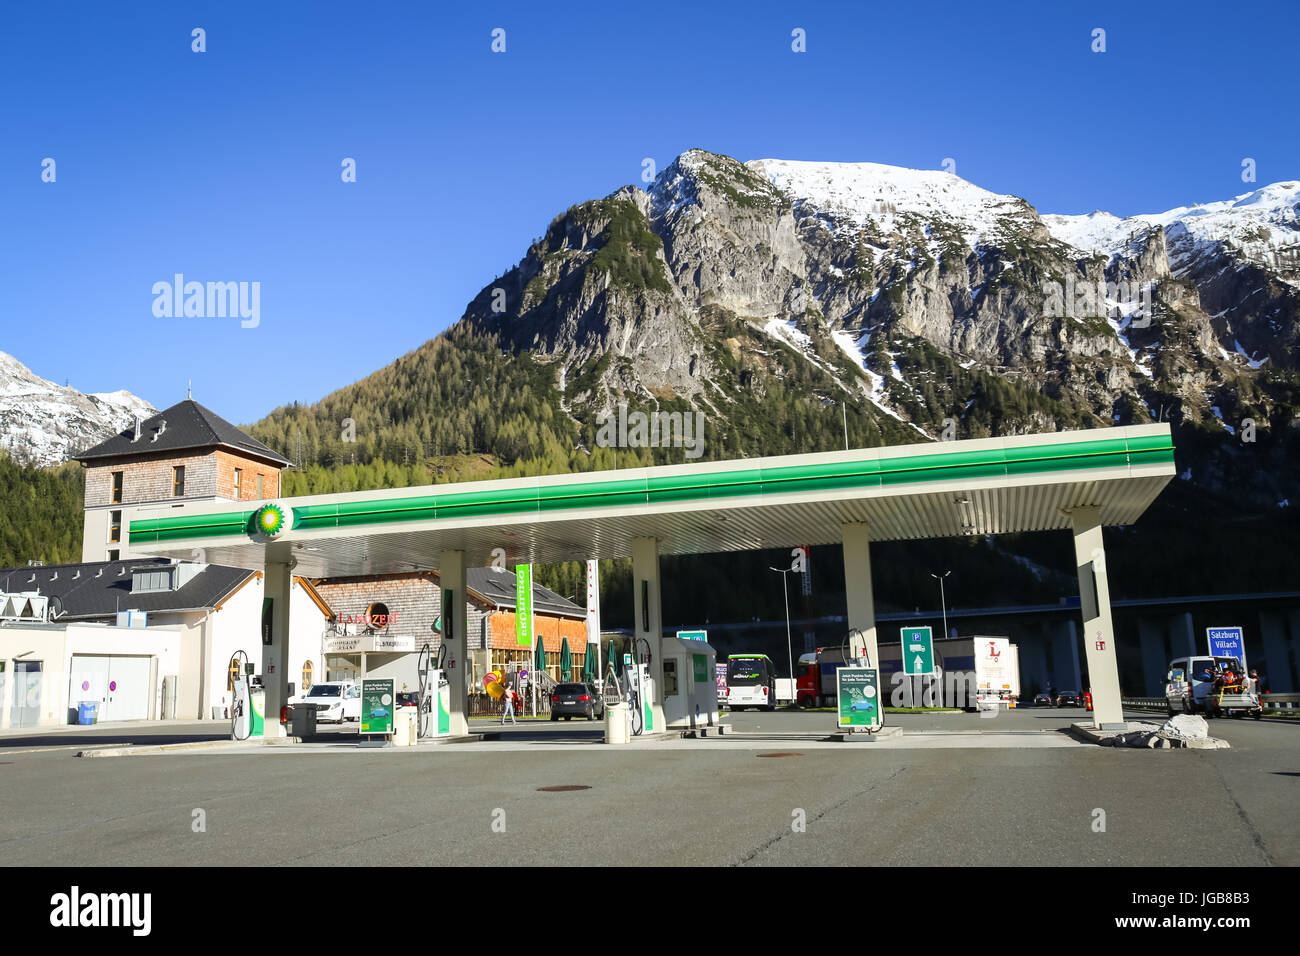 FLACHAU, Österreich - 10. Mai 2017: Der Autobahnraststätte mit einer BP- Tankstelle und Landzeit Tauernalm Hotel und Restaurant in Alpen Umgebung in  F Stockfotografie - Alamy